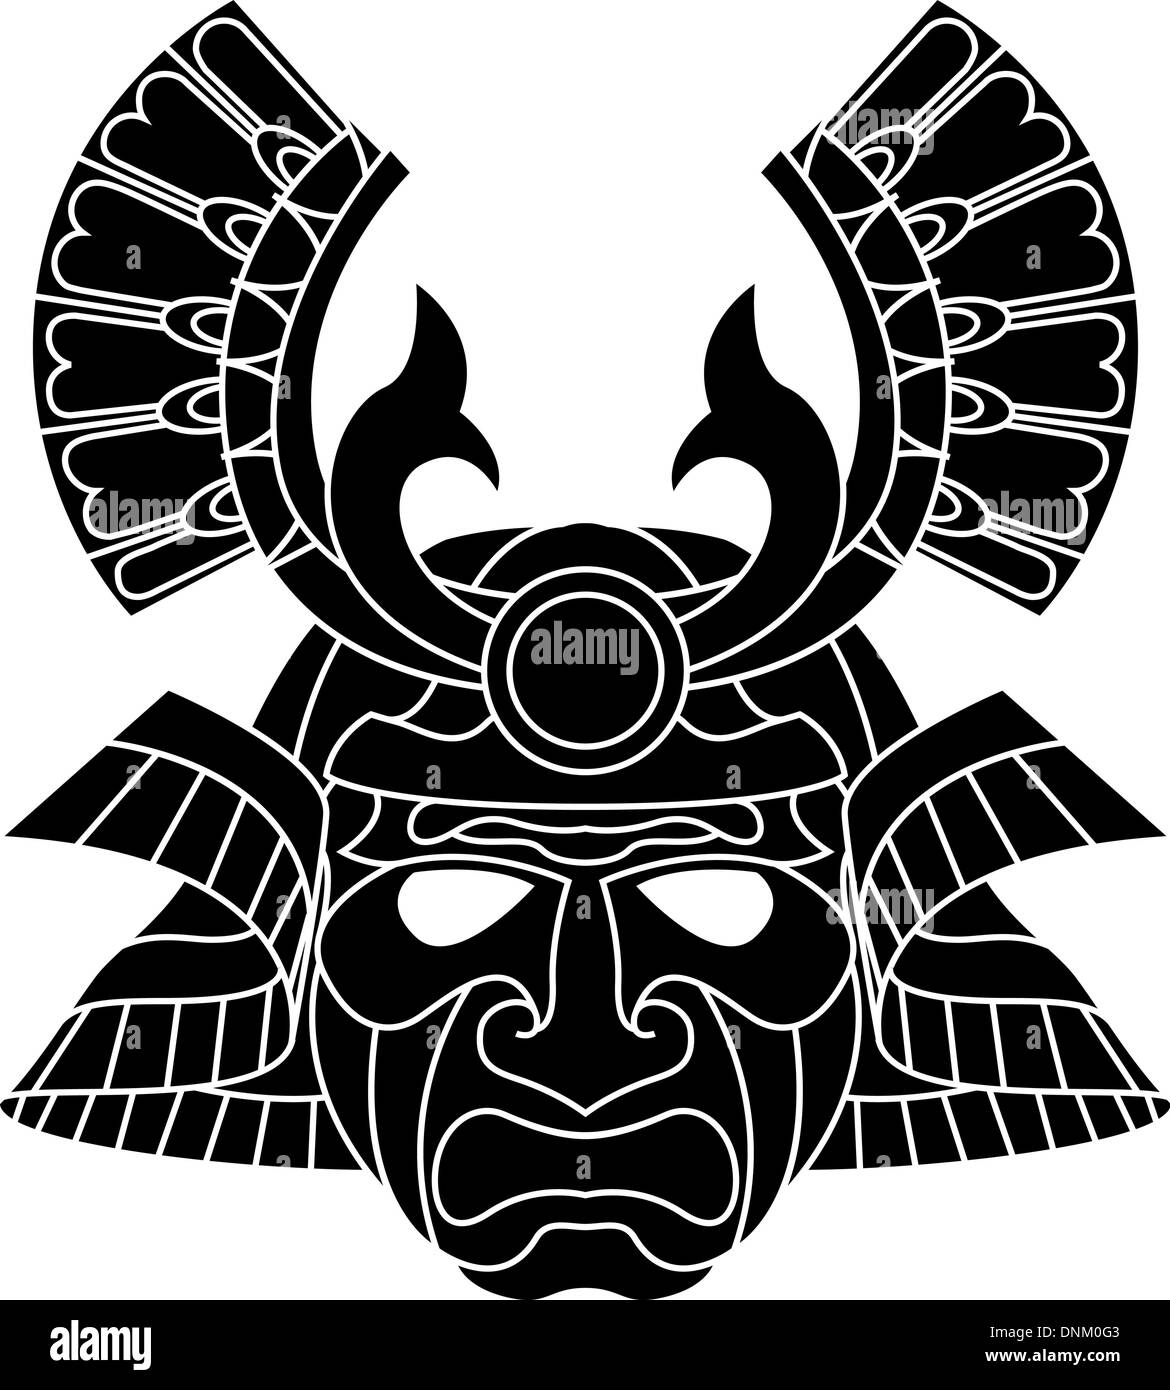 Une illustration d'un masque de samouraï monochrome redoutable Illustration de Vecteur